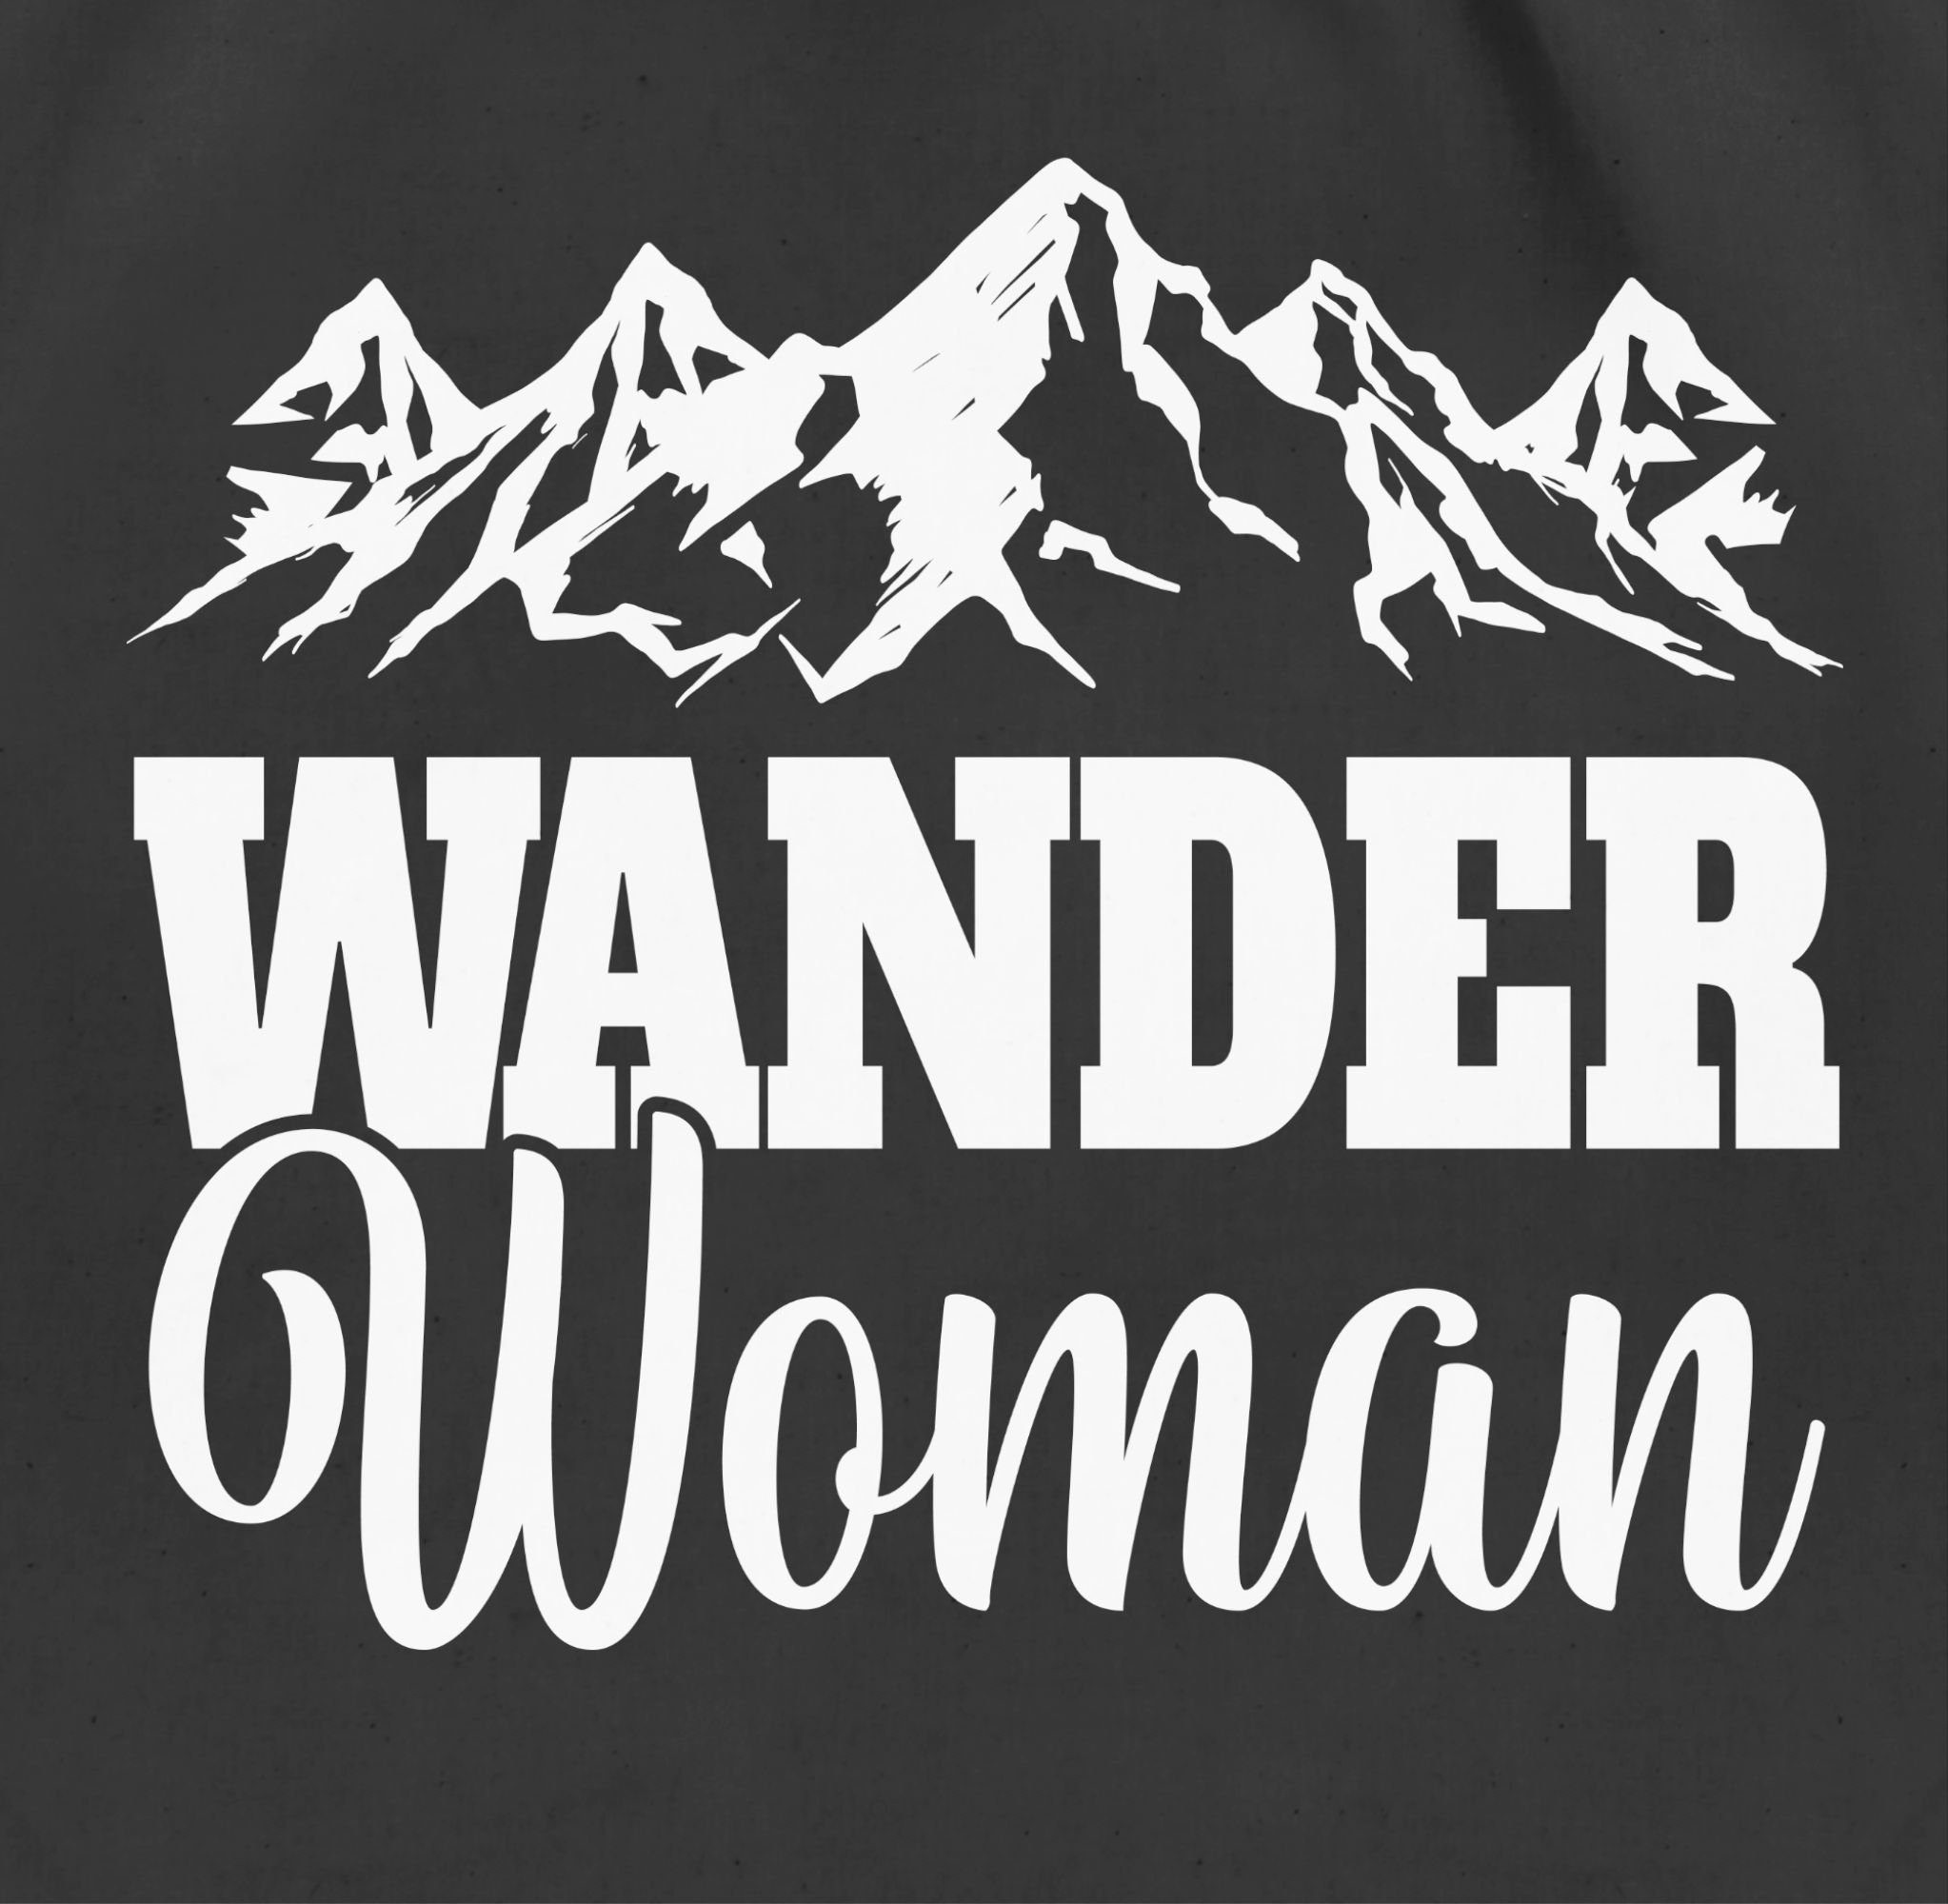 Woman, Turnbeutel 02 Wander Zubehör Schwarz Shirtracer Sport